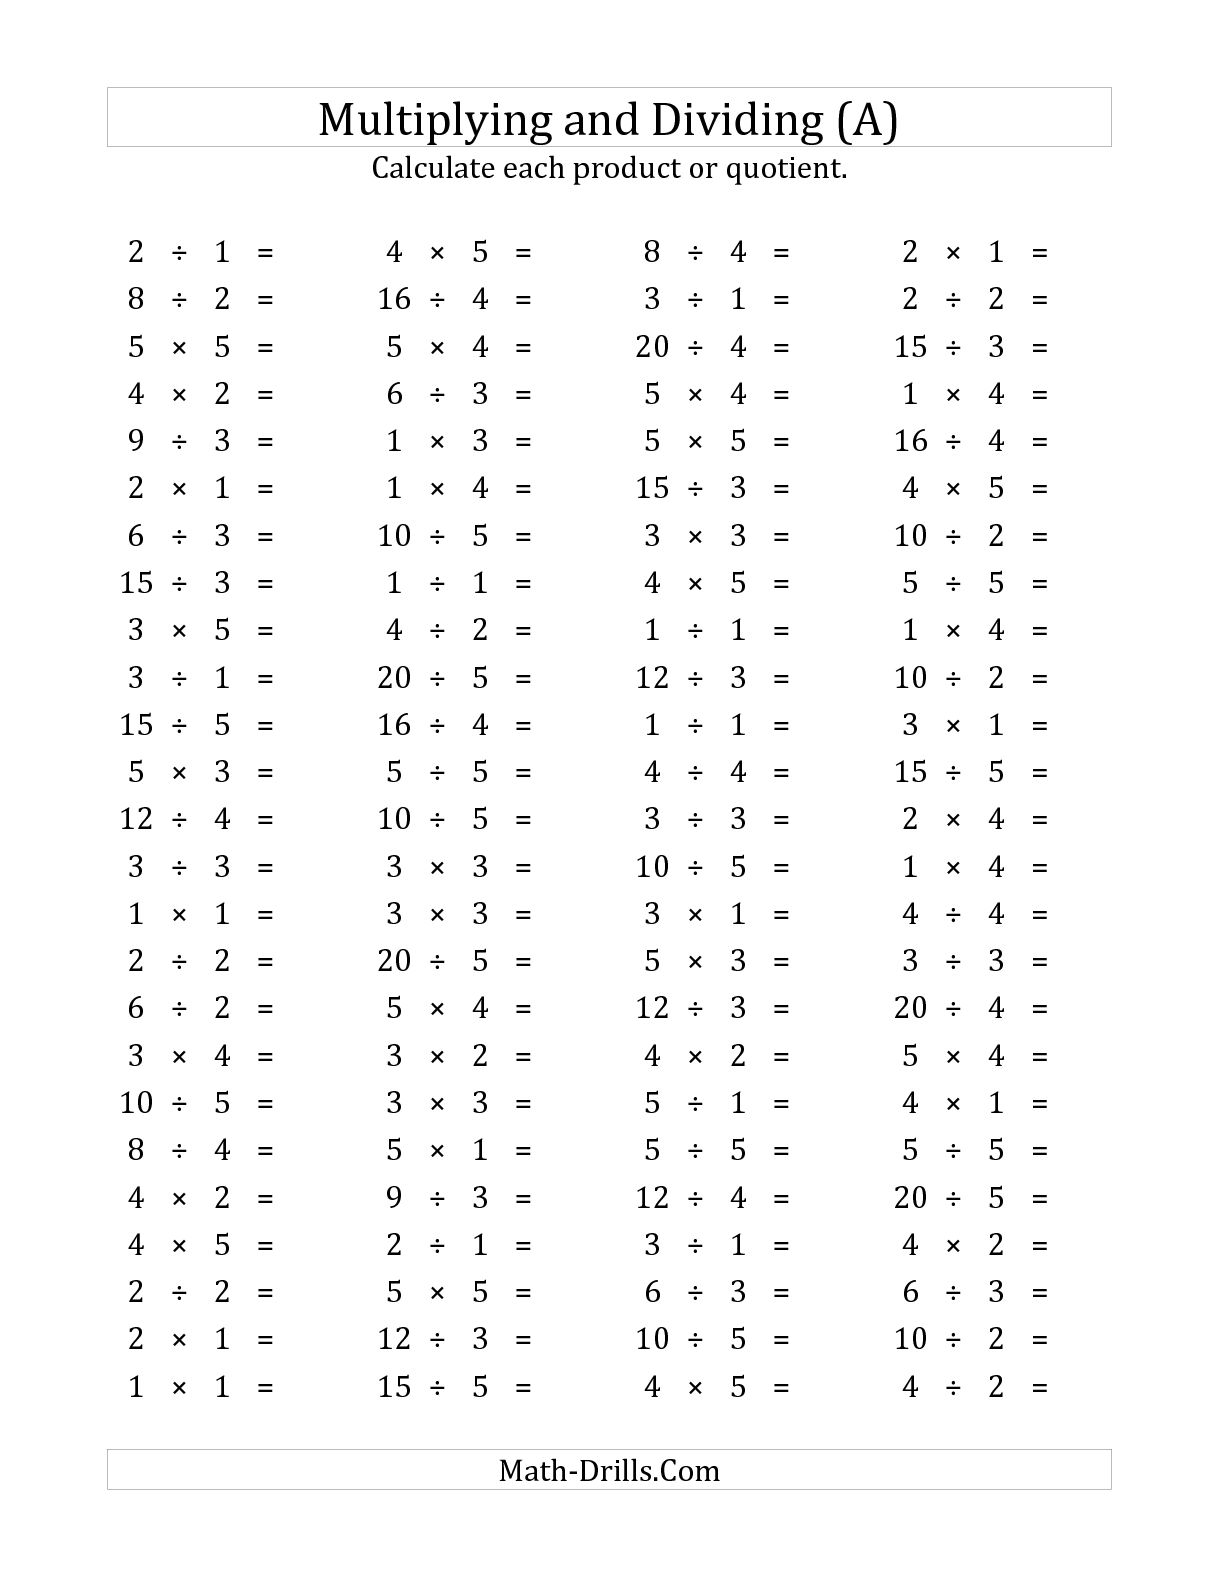 Multiplication Worksheets 100 Problems Image